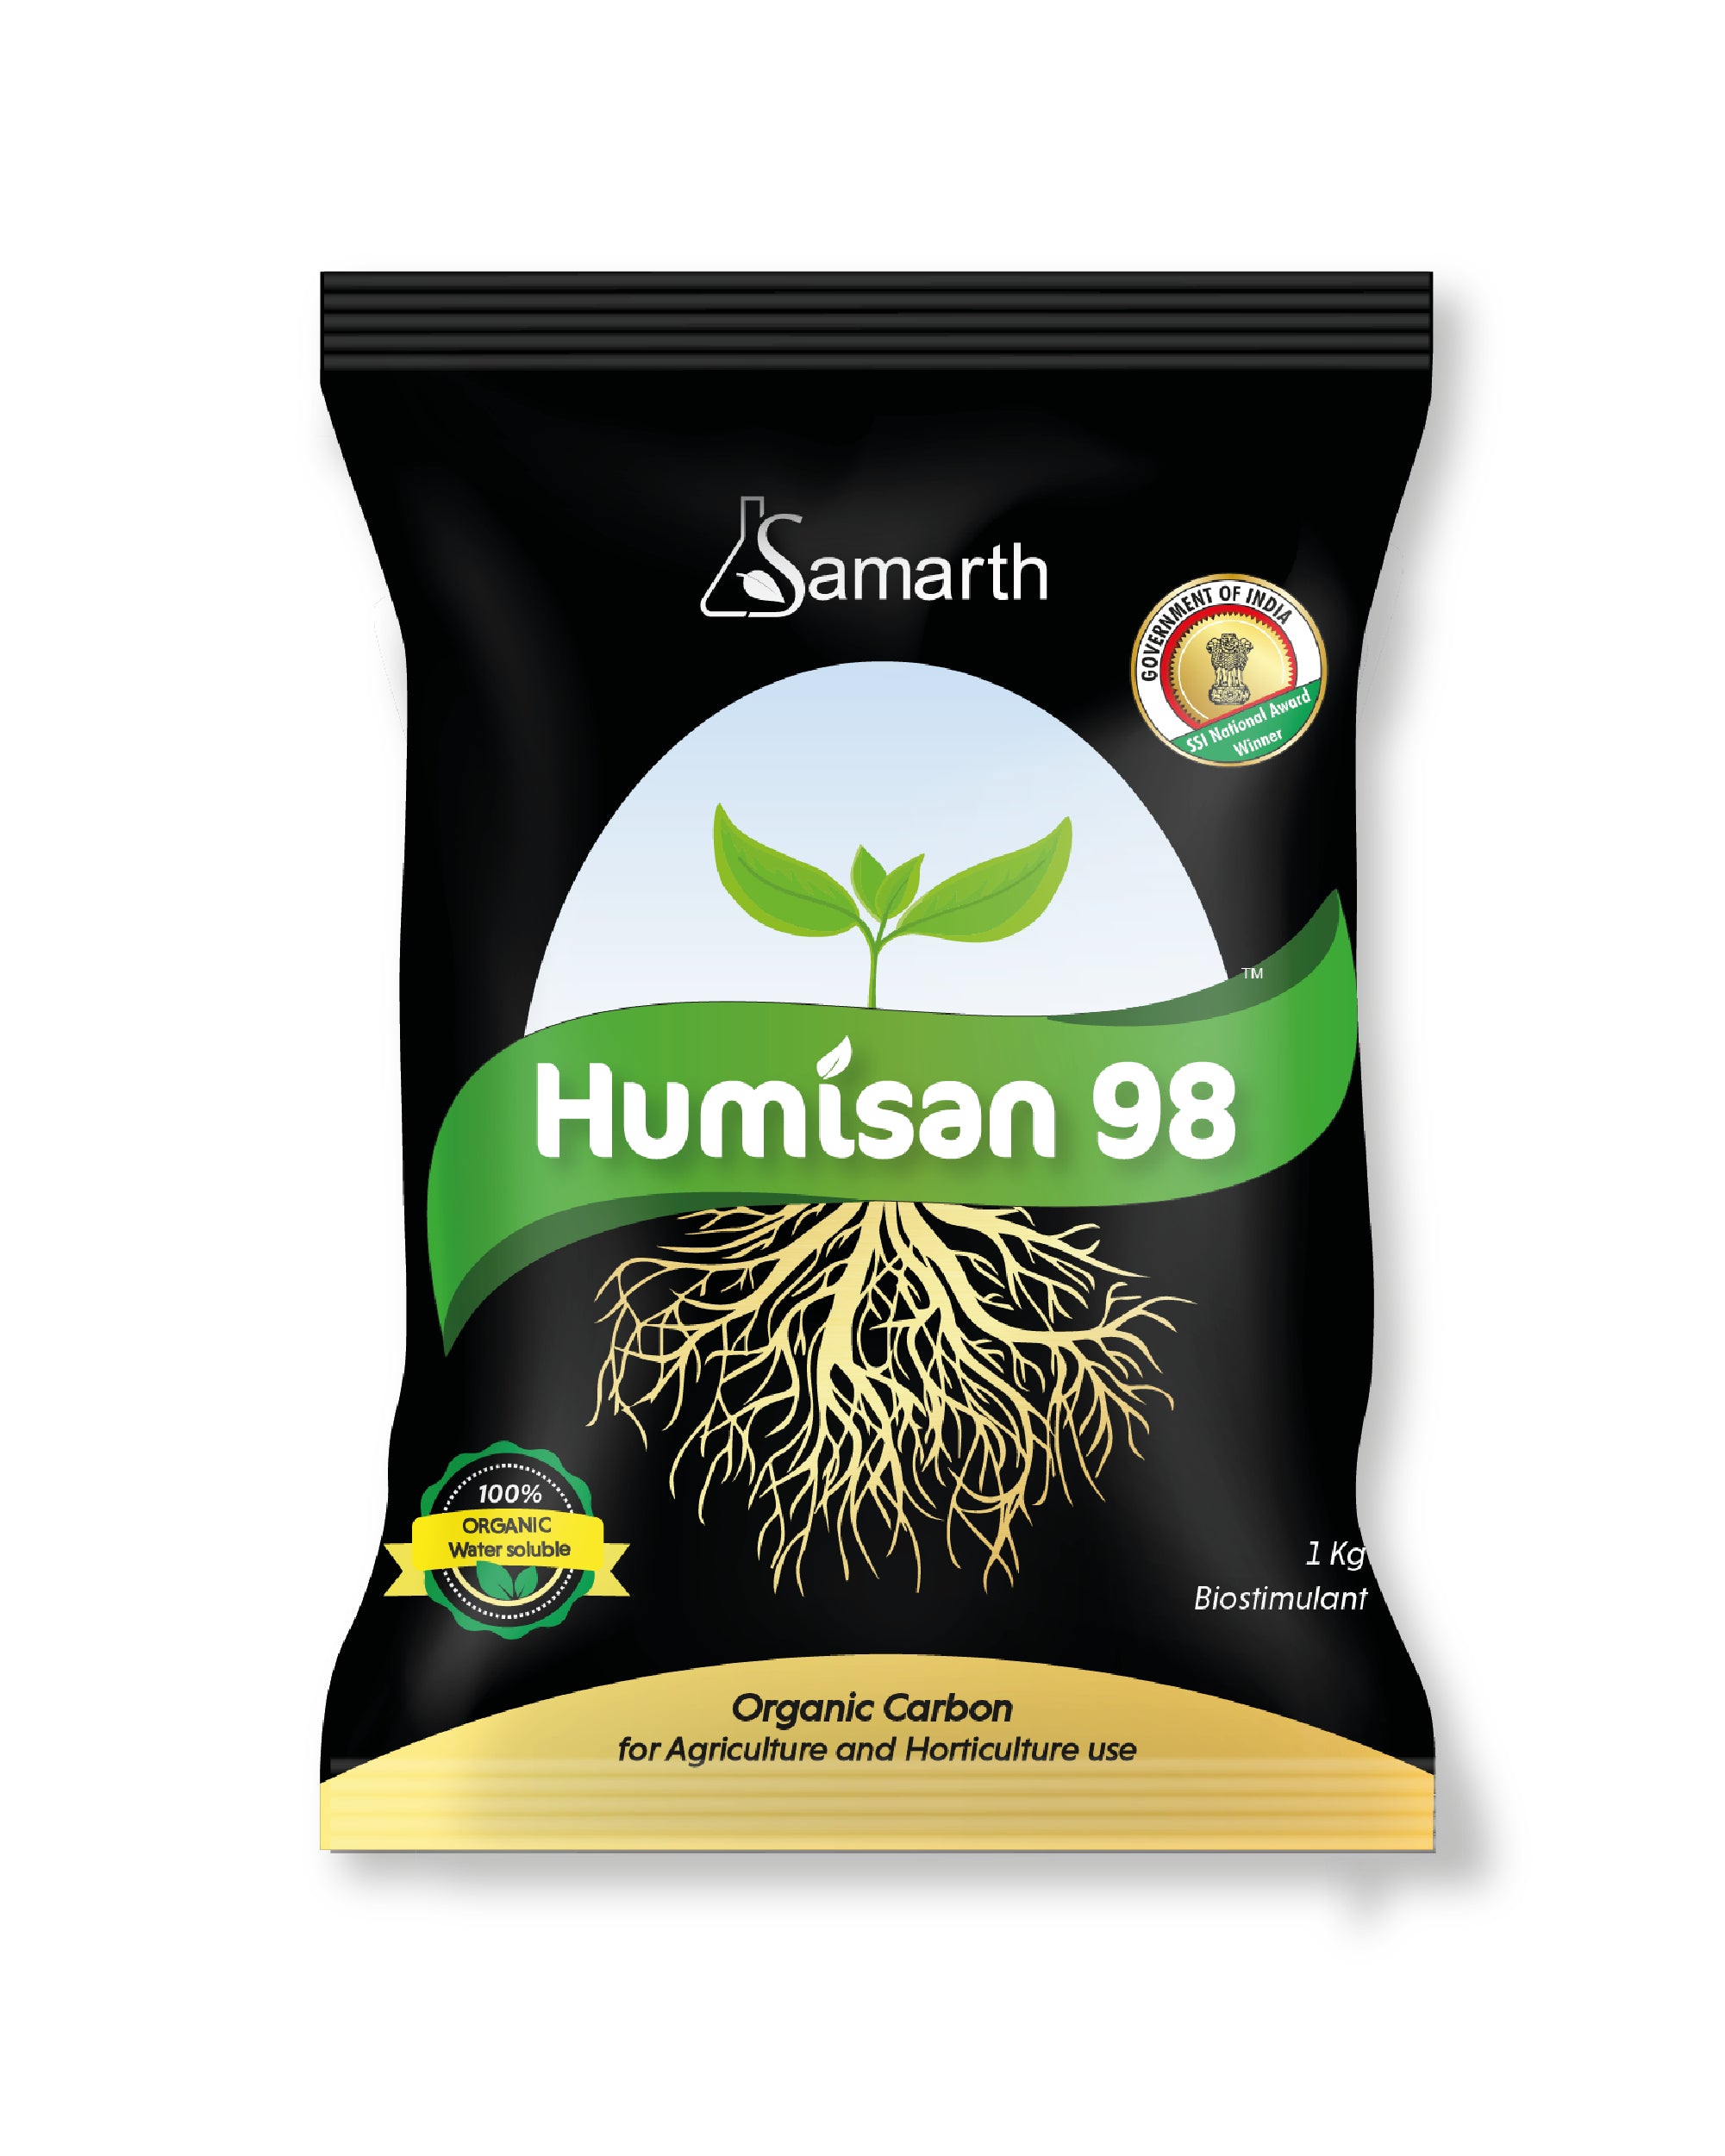 SAMRATH HUMISAN 98 product  Image